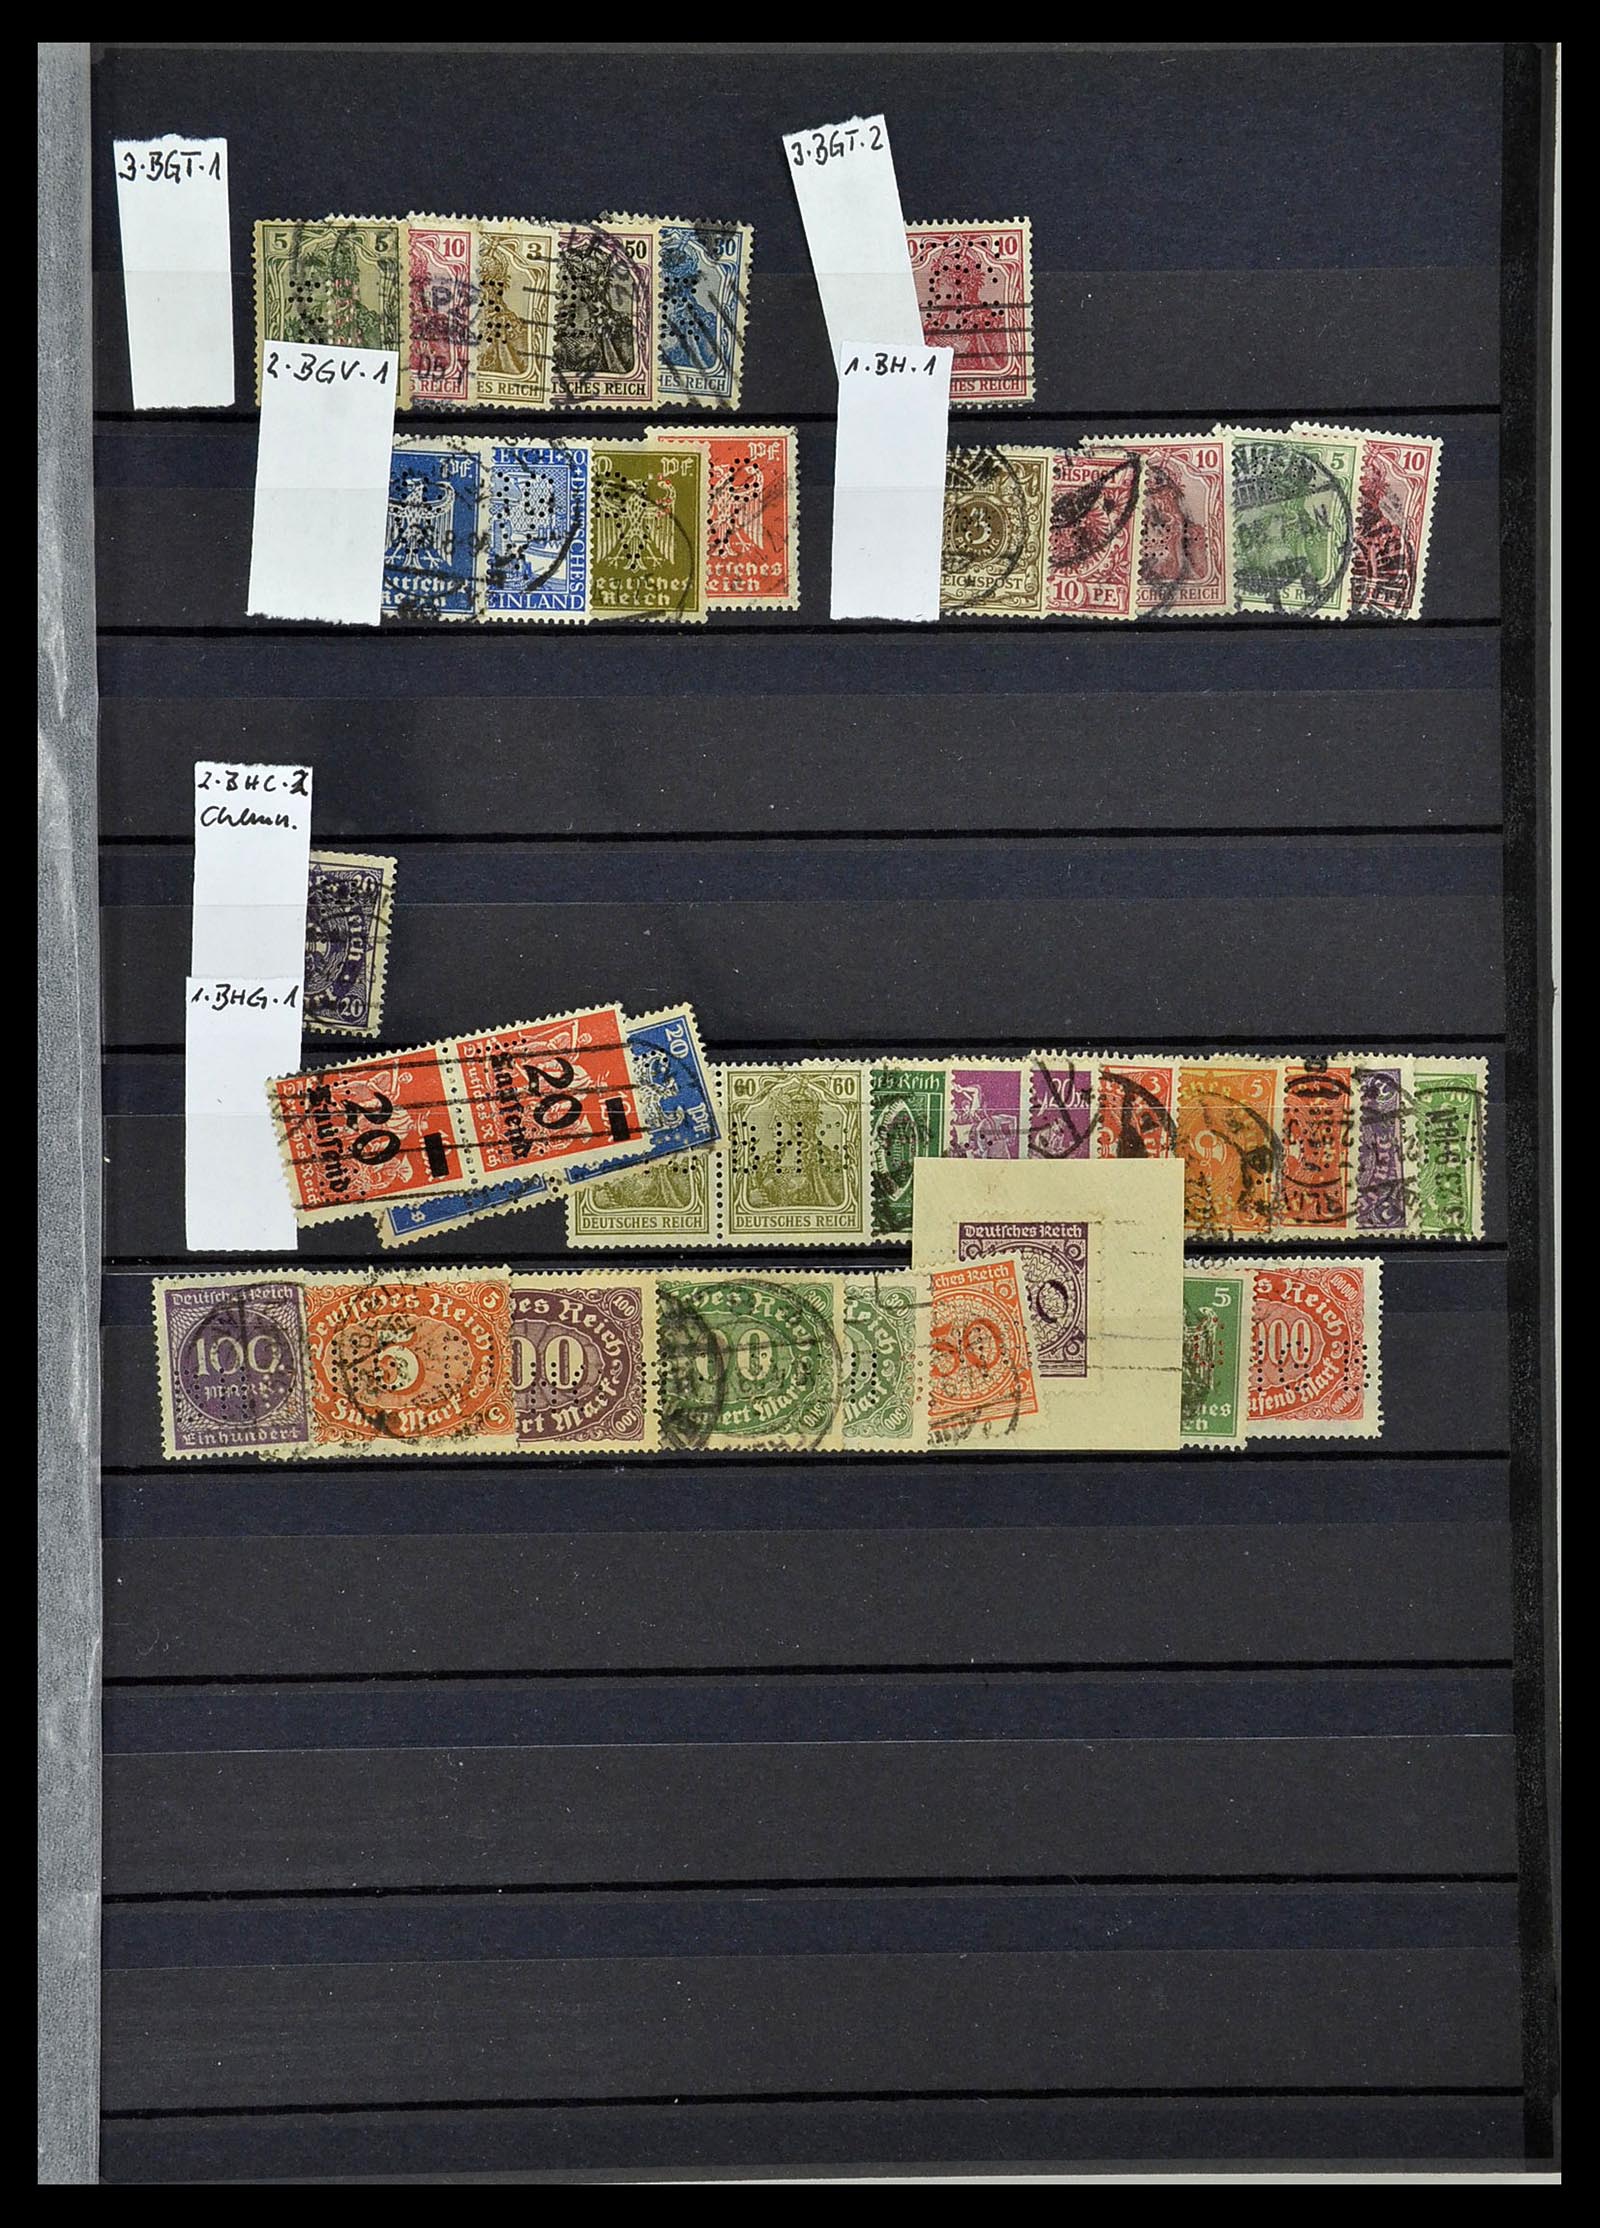 34432 062 - Stamp Collection 34432 German Reich perfins 1900-1933.